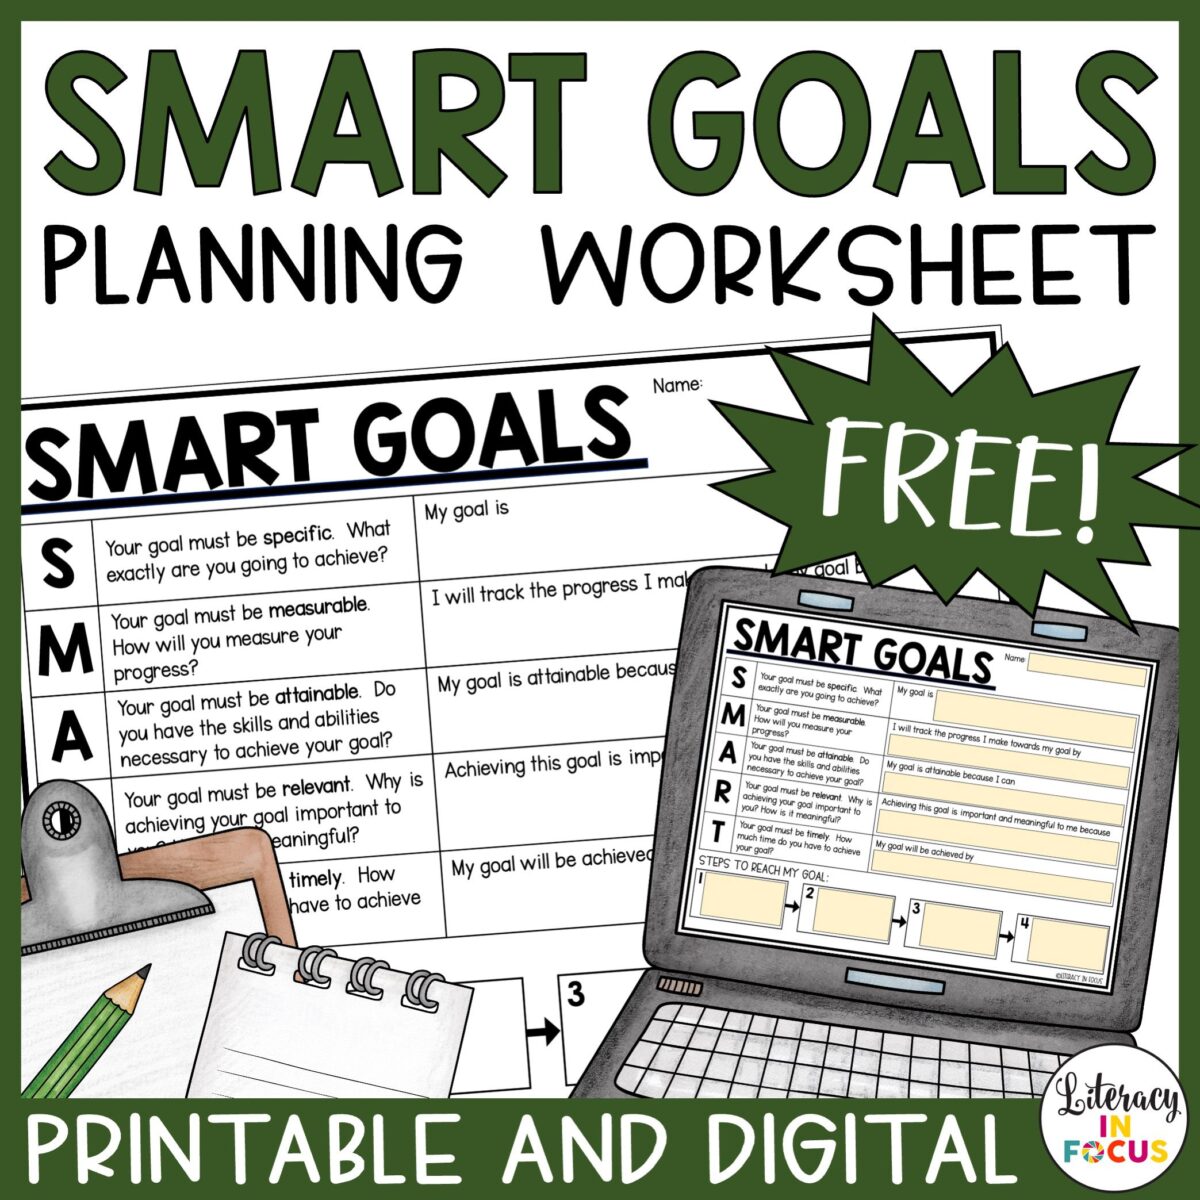 SMART Goals Planning Worksheet